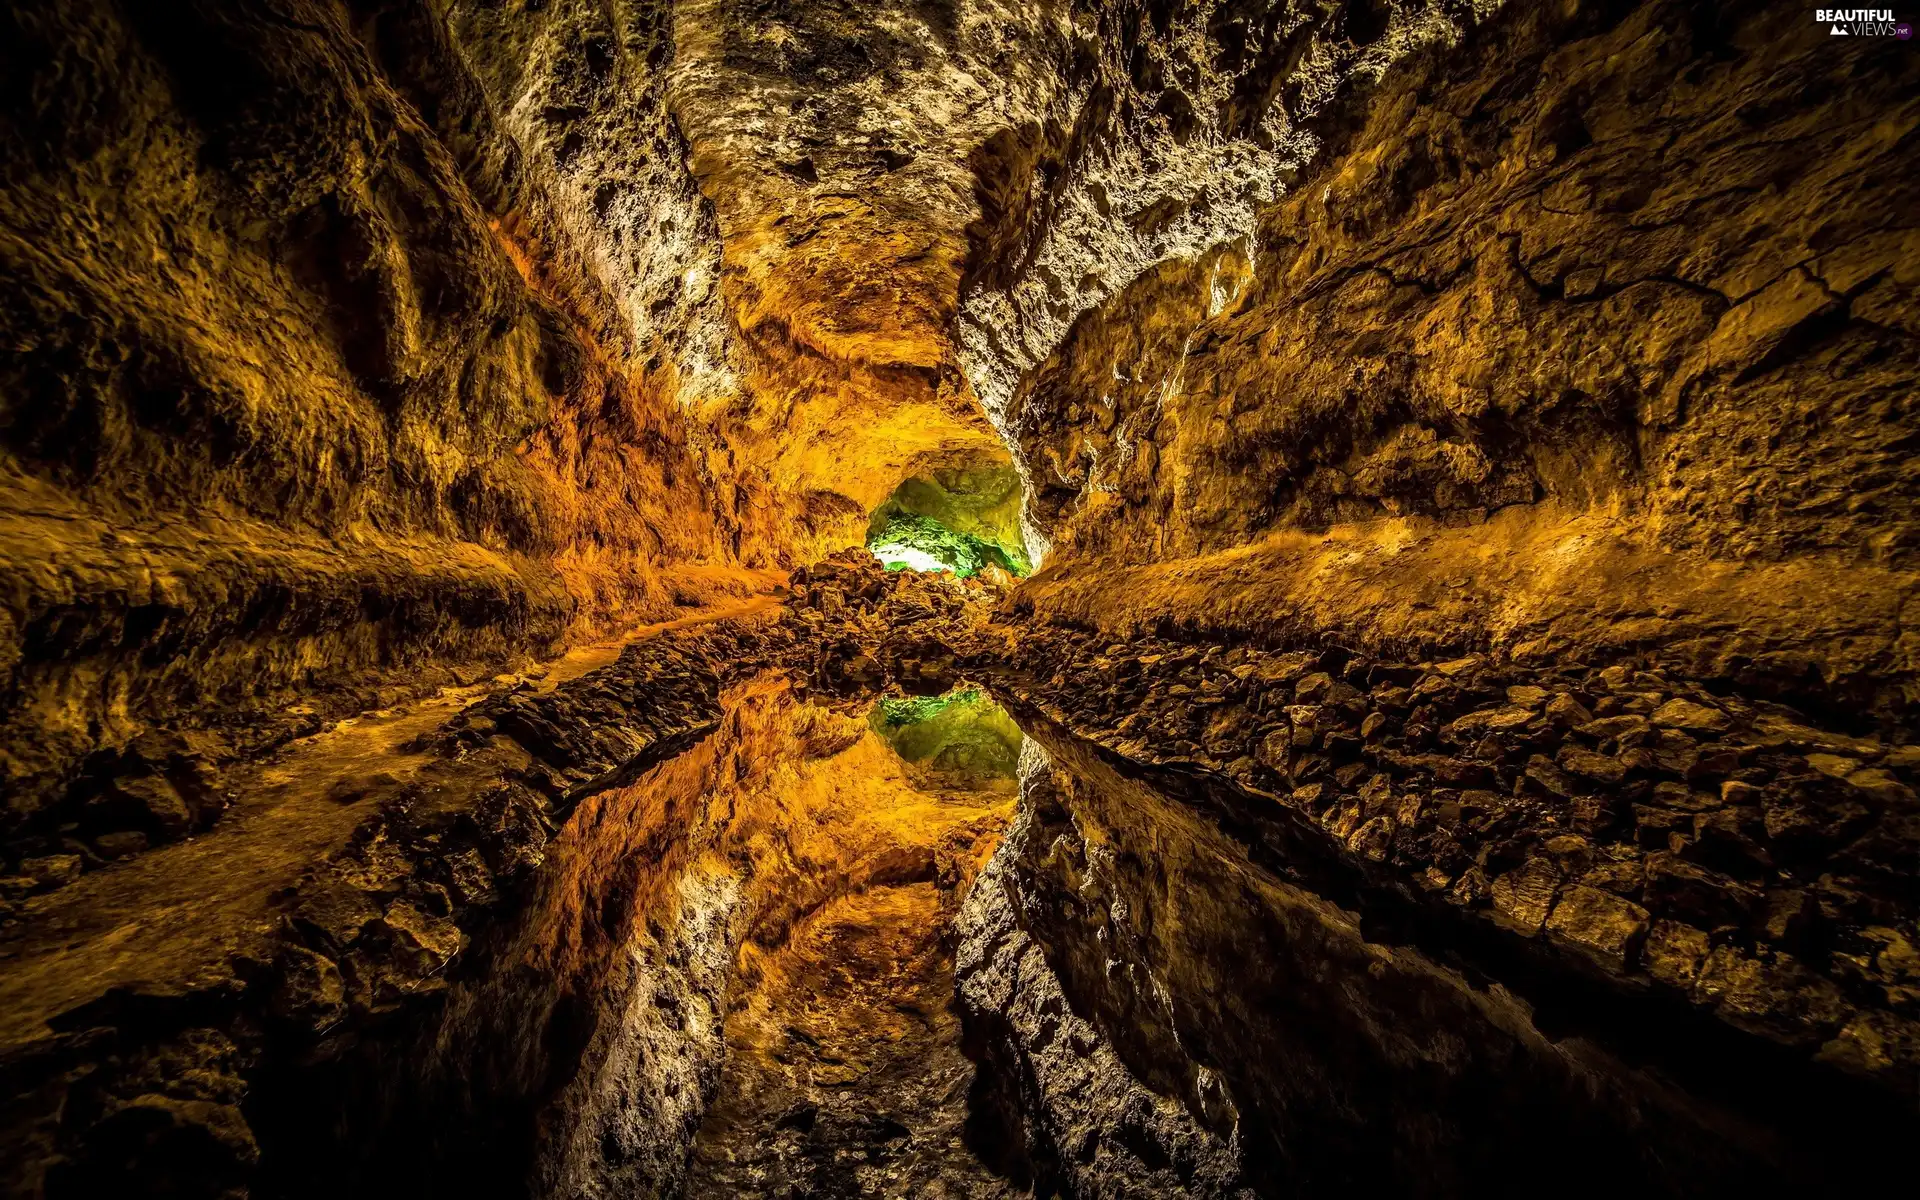 Cueva de los Verdes Cave, Canary Islands, Island of Lanzarote